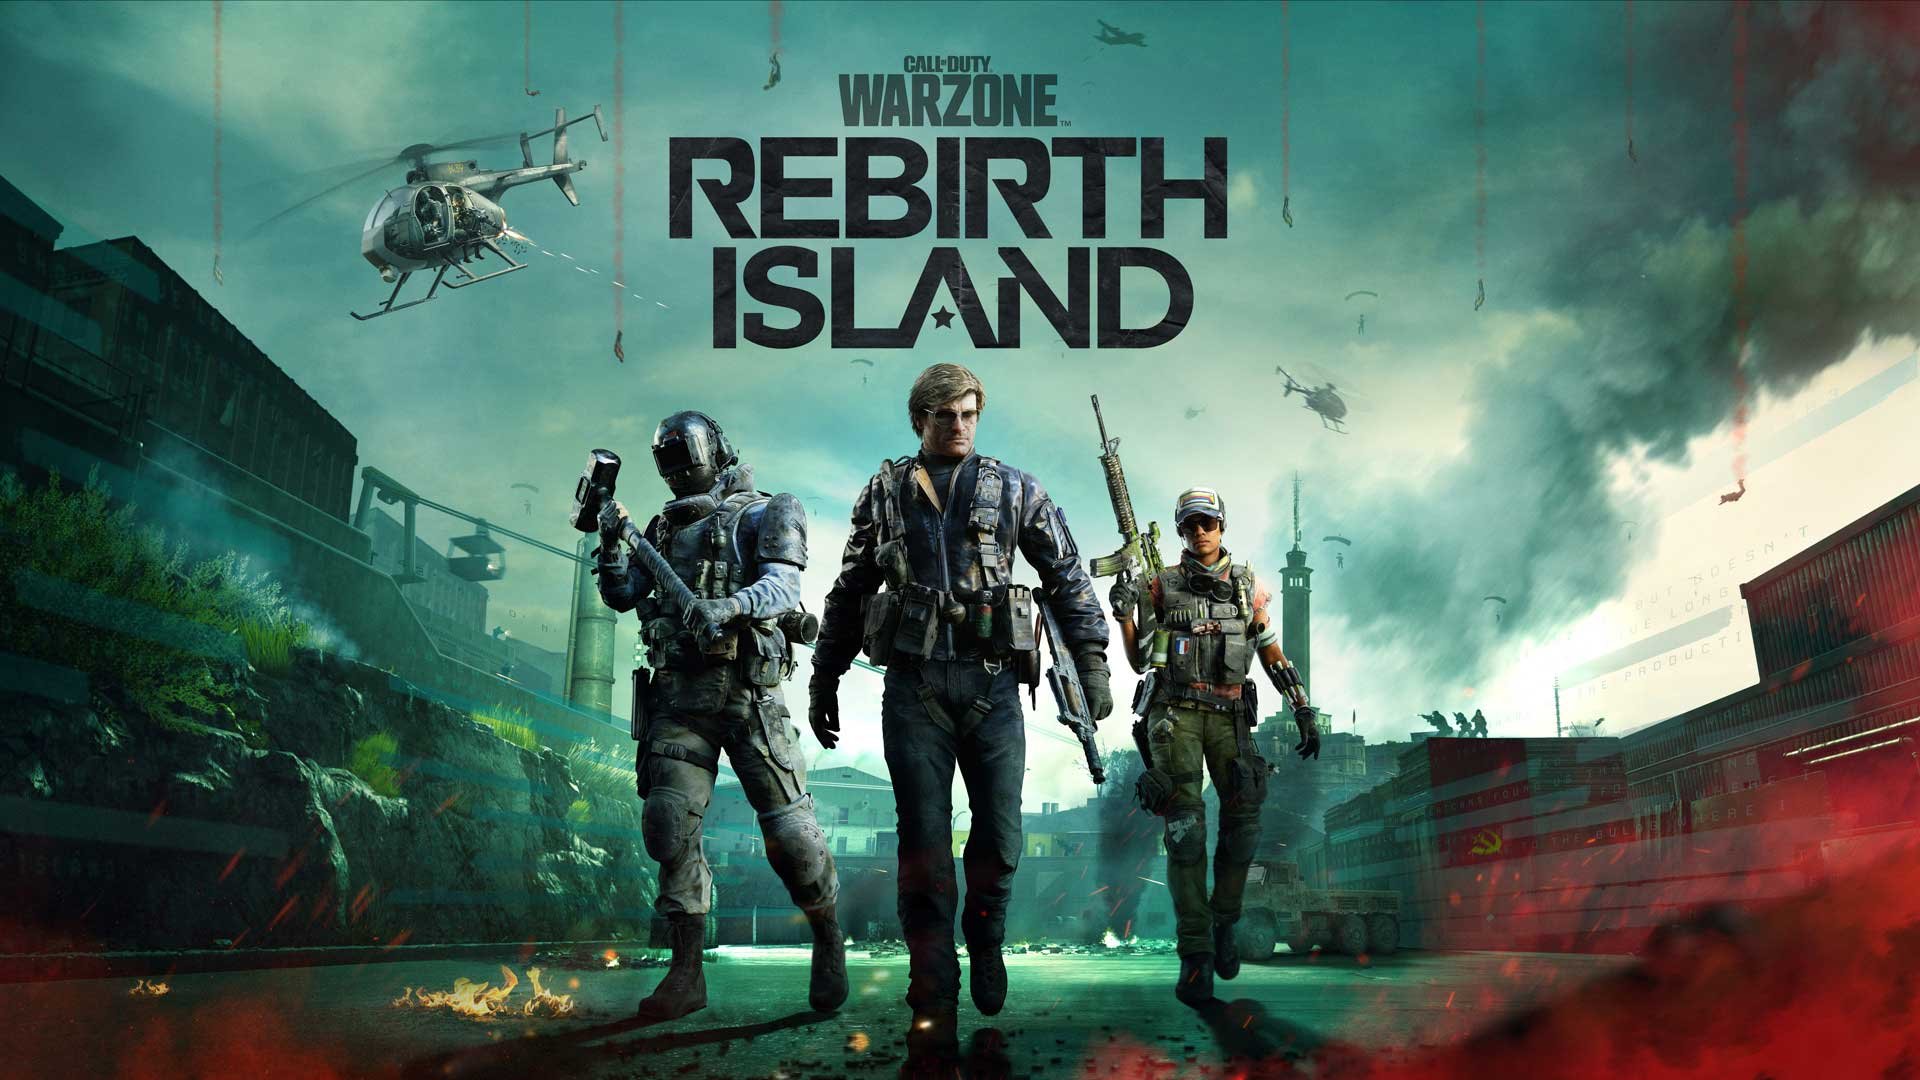 Confirmando os rumores, a Rebirth Island chegou a Warzone